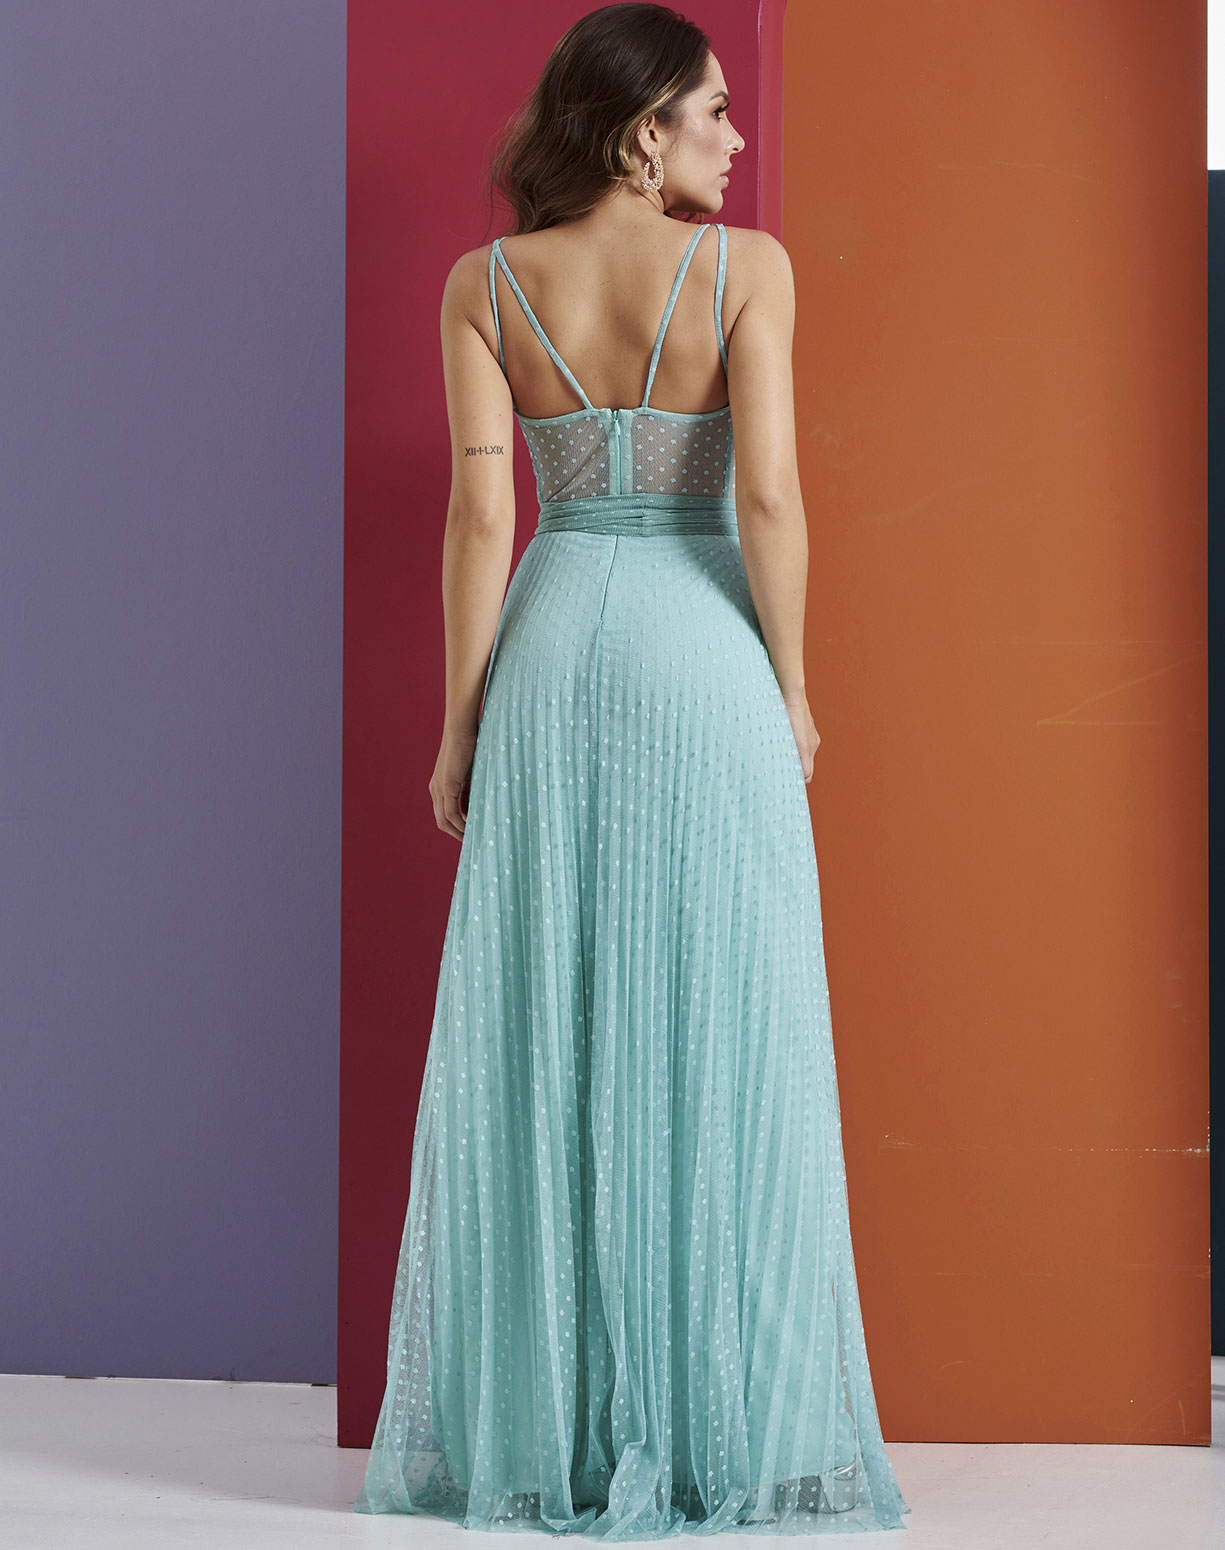 Vestido Tiffany em Tule Texturizado com Corpete